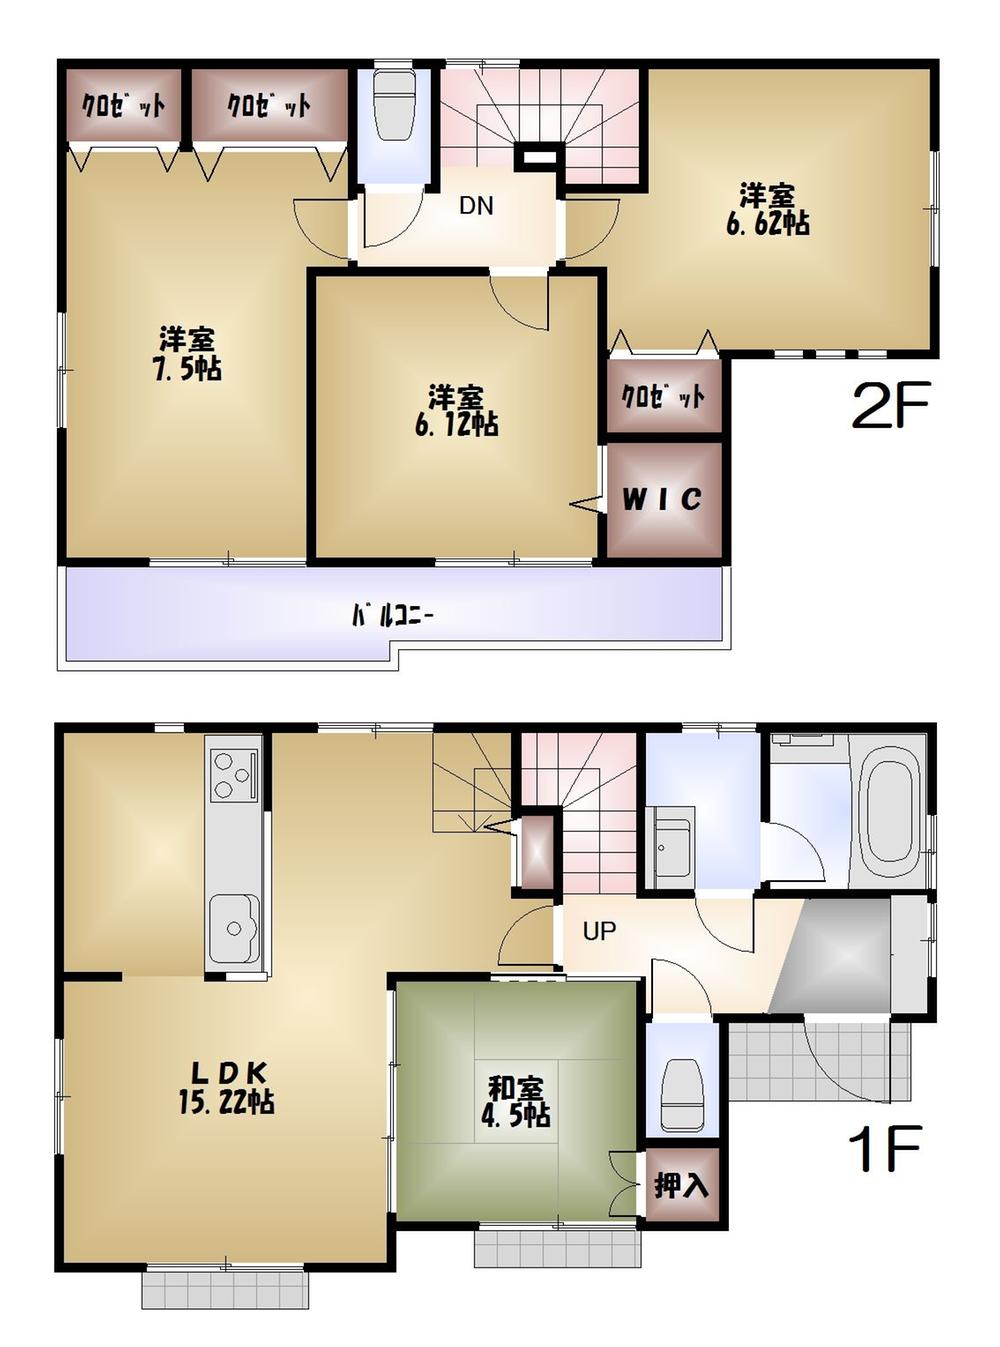 Floor plan. 49,800,000 yen, 4LDK, Land area 120.52 sq m , Building area 95.18 sq m floor plan